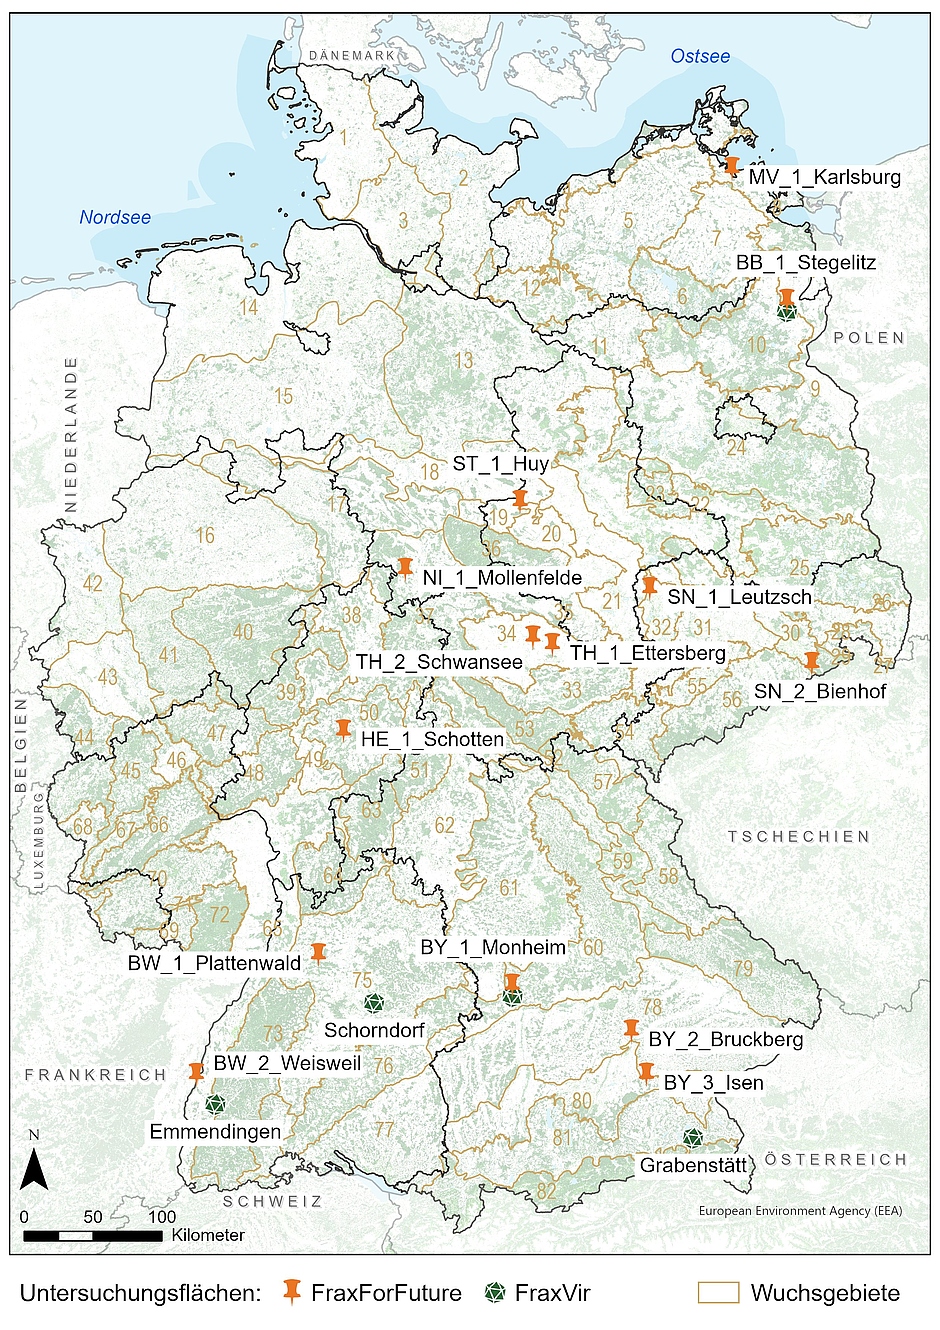 Übersichtskarte der Untersuchungsflächen in Deutschland. Insgesamt gibt es 14 FraxForFuture-Untersuchungsflächen, die vom Nord-Osten über die Mitte bis in den Süden Deutschlands verteilt sind. FraxVir arbeitet auf drei weiteren Flächen in Süddeutschland. 